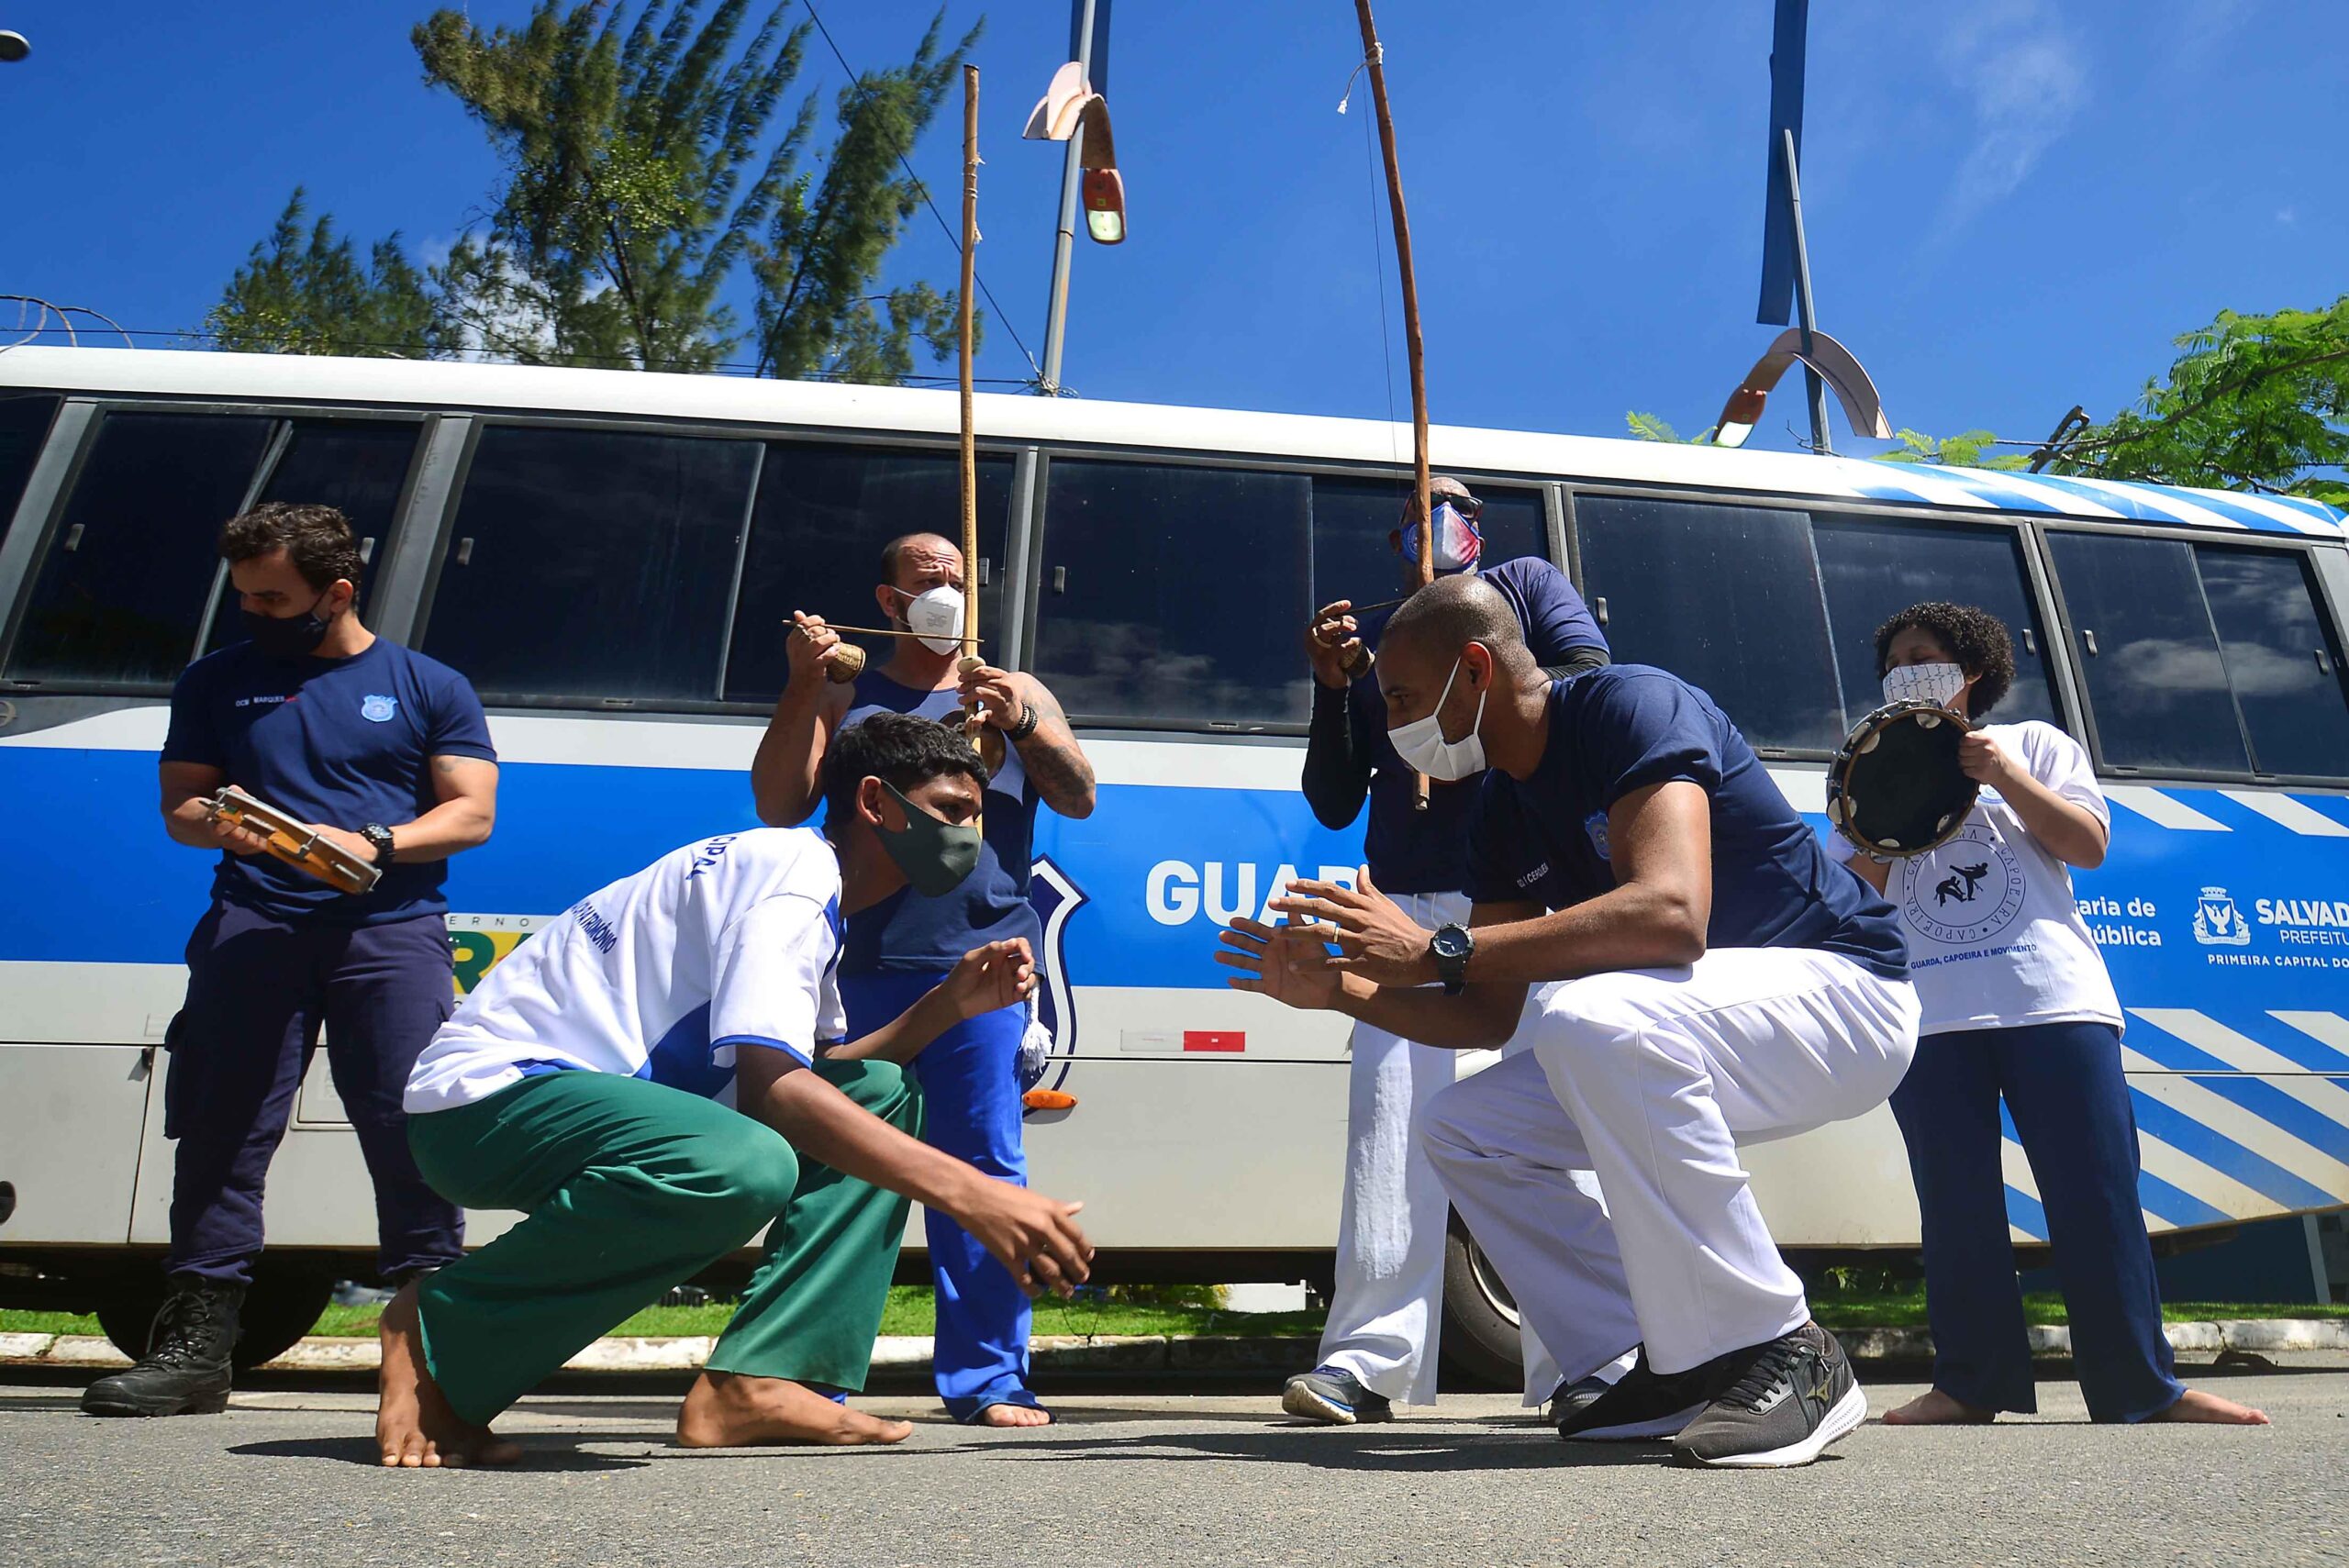 Guarda Municipal inscreve para aulas gratuitas de capoeira